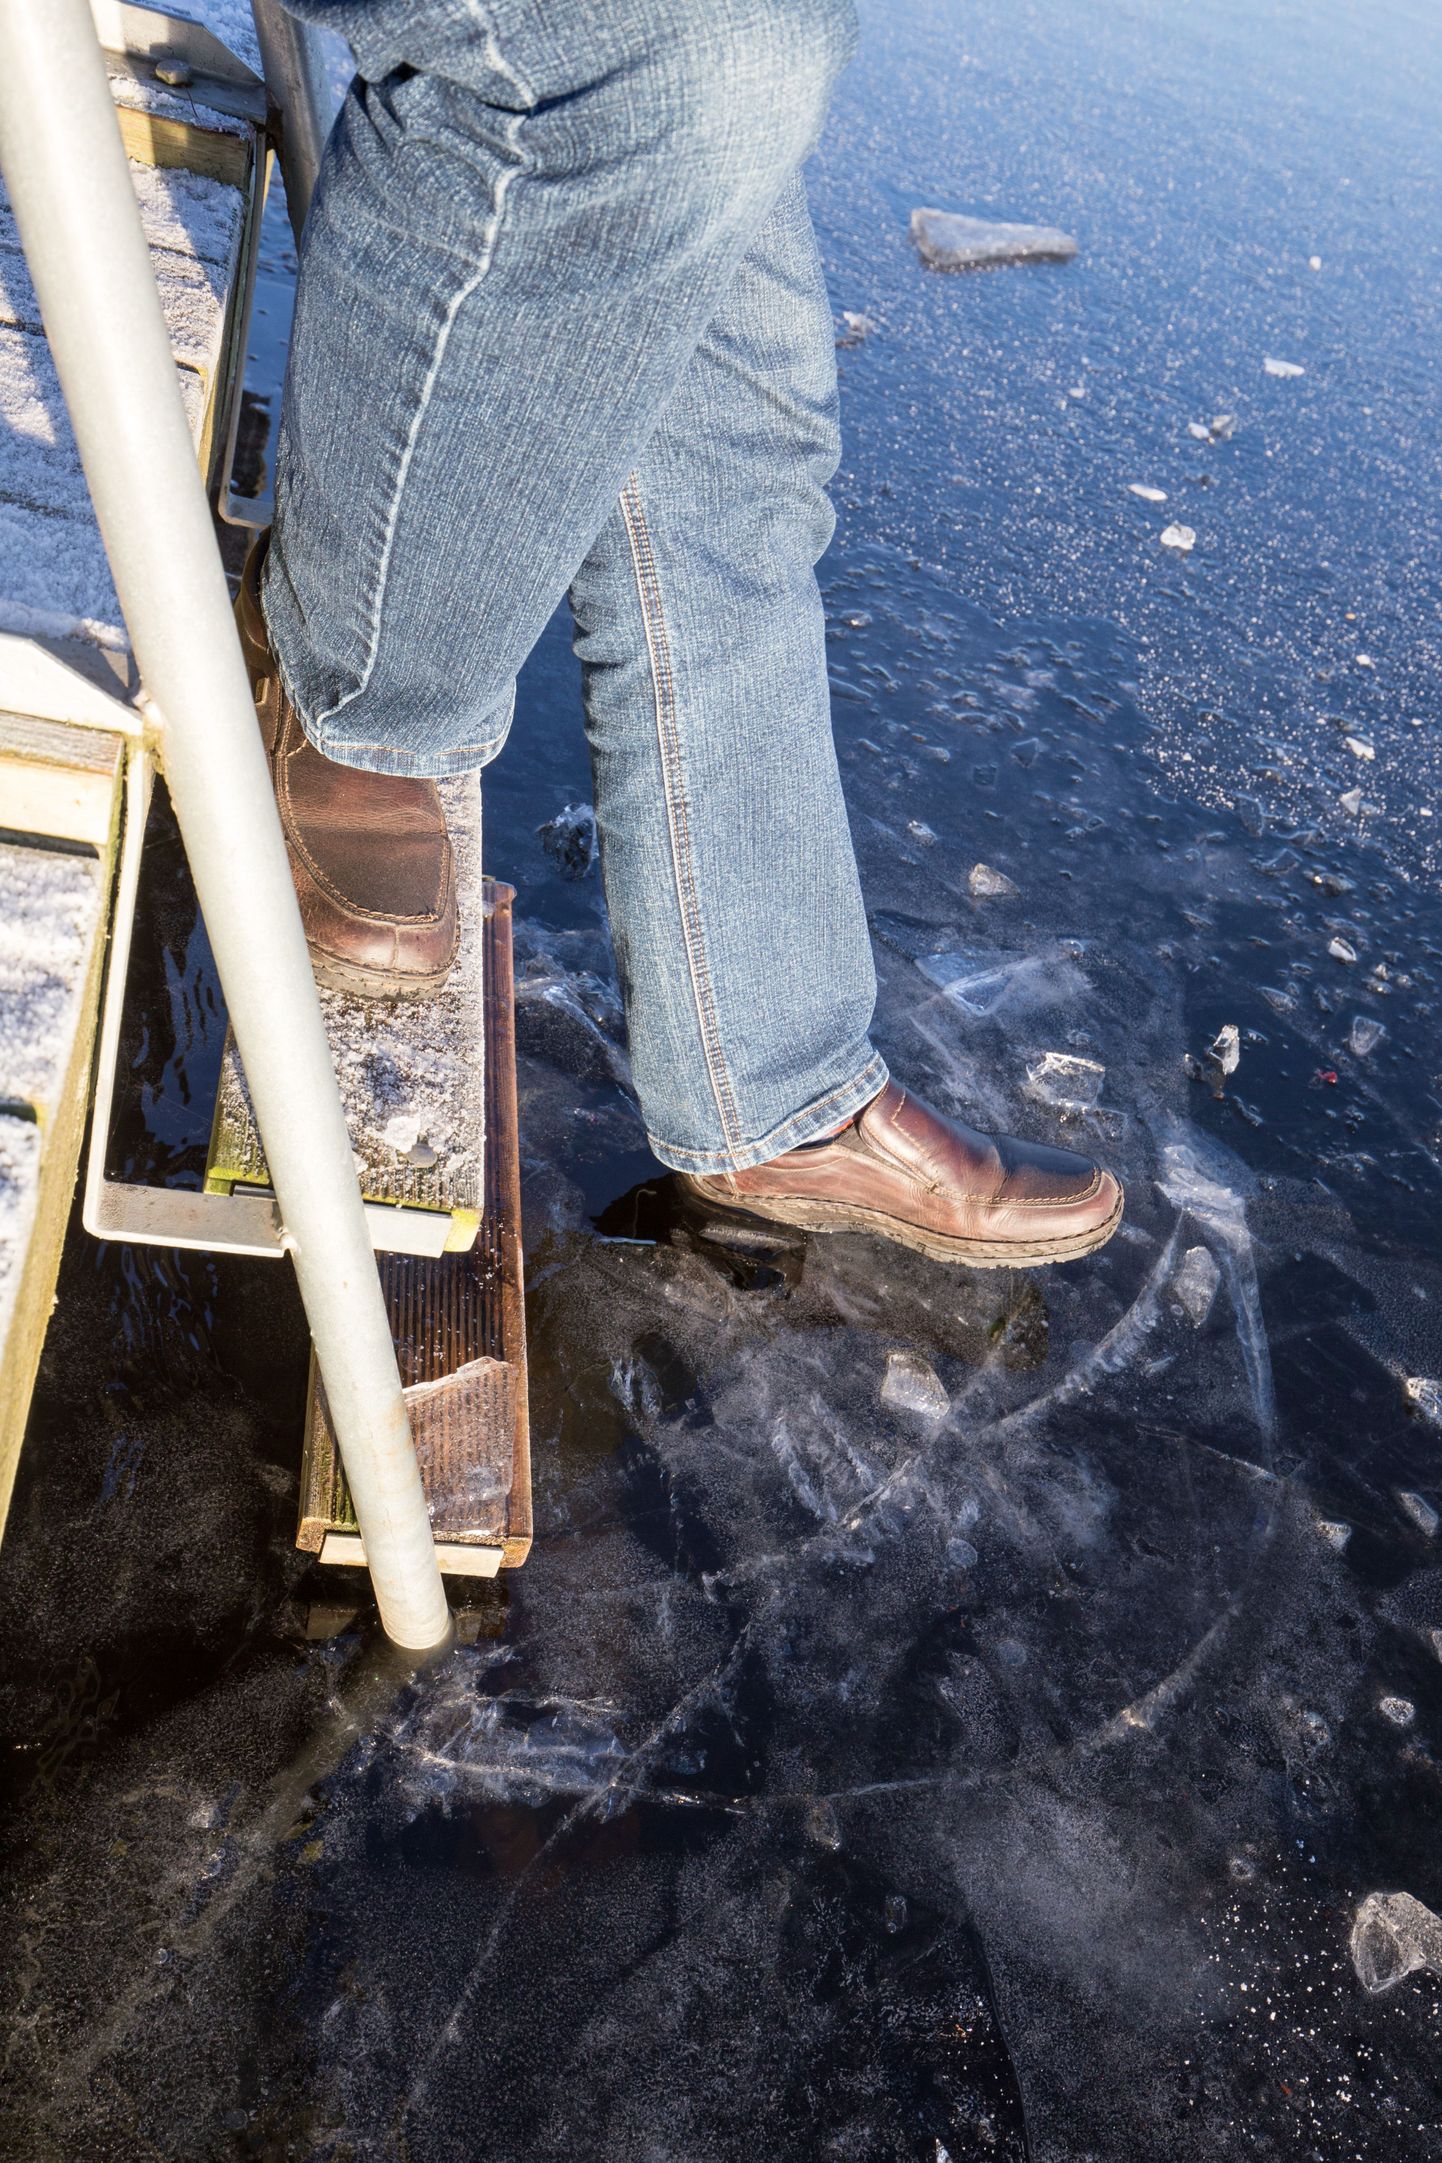 Järvejääle astumisel tuleb praegu olla väga ettevaatlik, sest jää pole veel igal pool piisavalt paks. See foto on tehtud Paala järvel kolm päeva tagasi.

ELMO RIIG/SAKALA